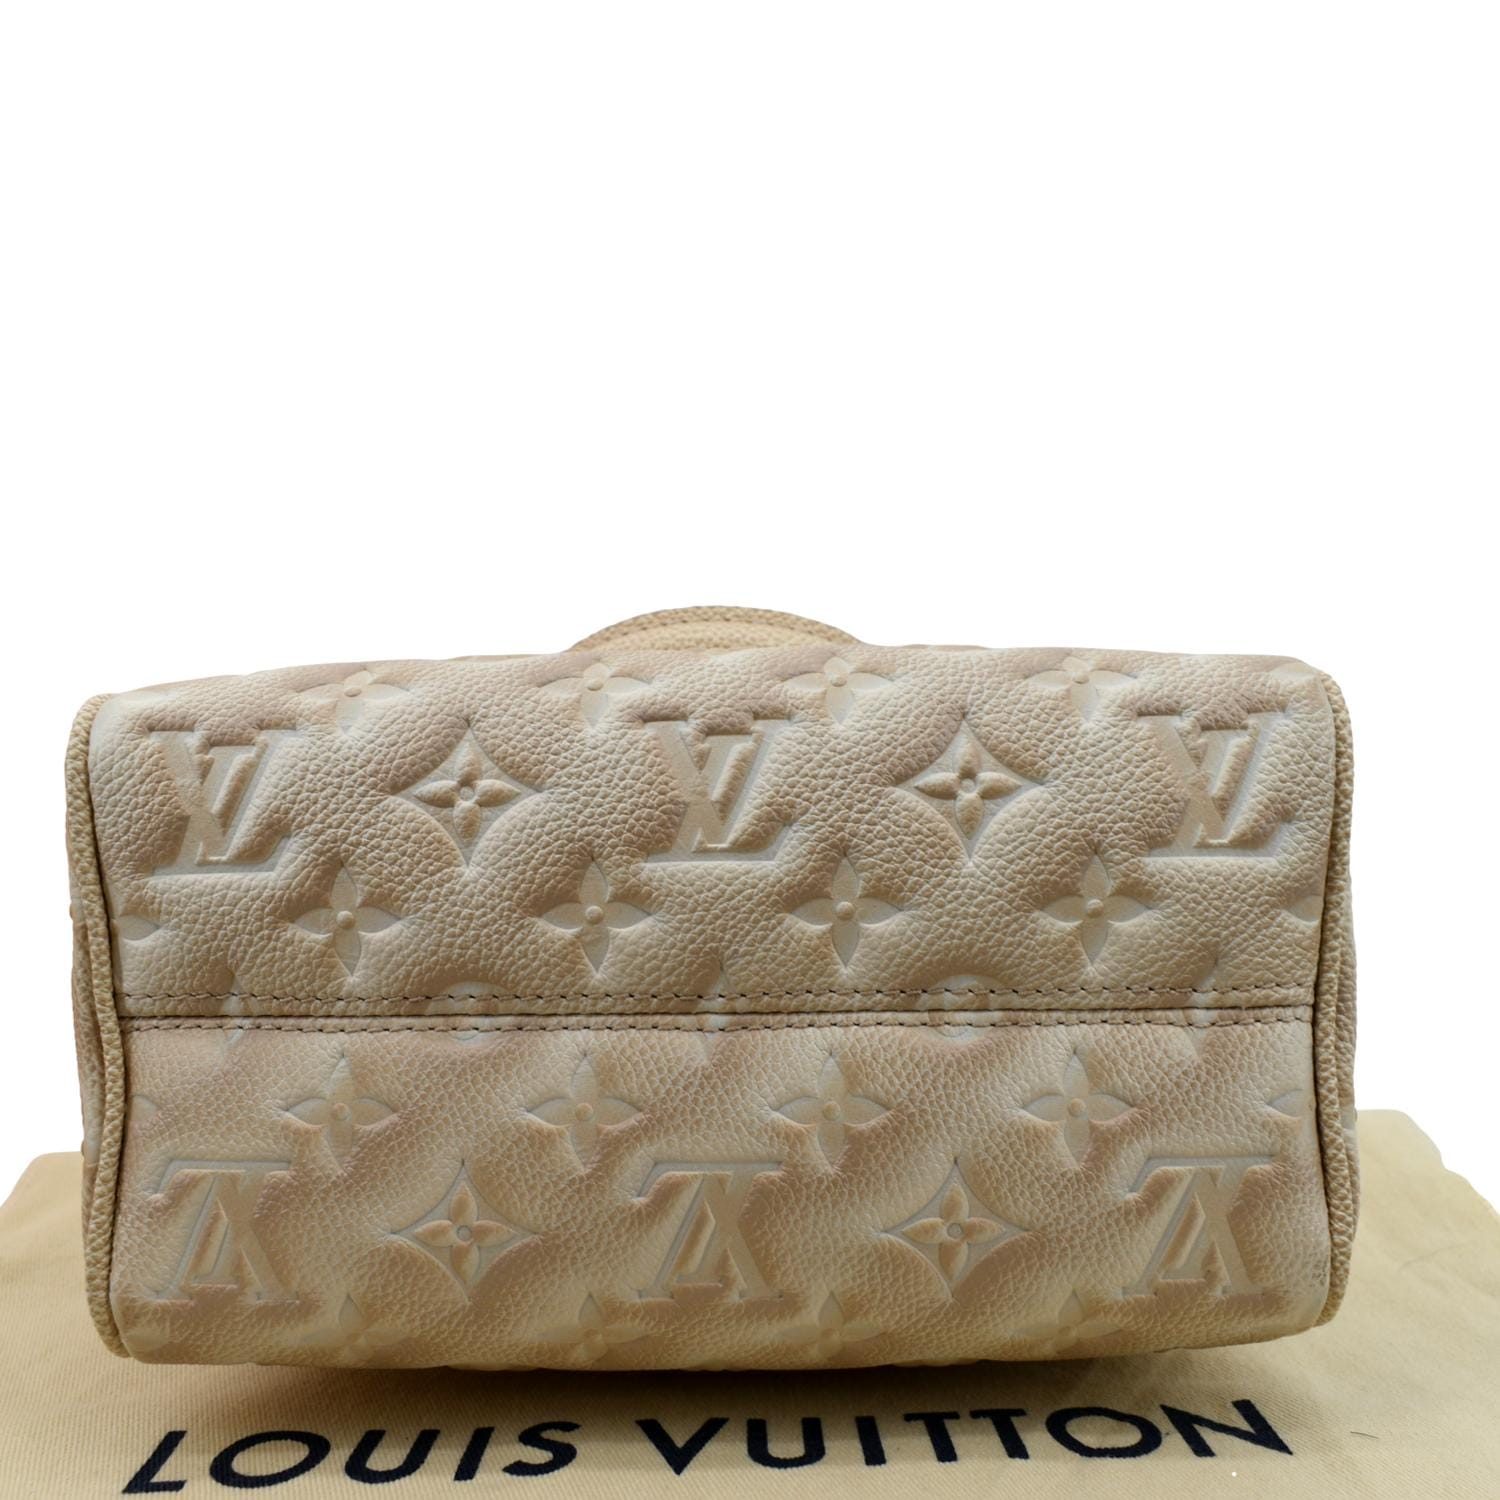 Louis-Vuitton-Set-of-20-Dust-Bag-Storage-Bag-Beige – dct